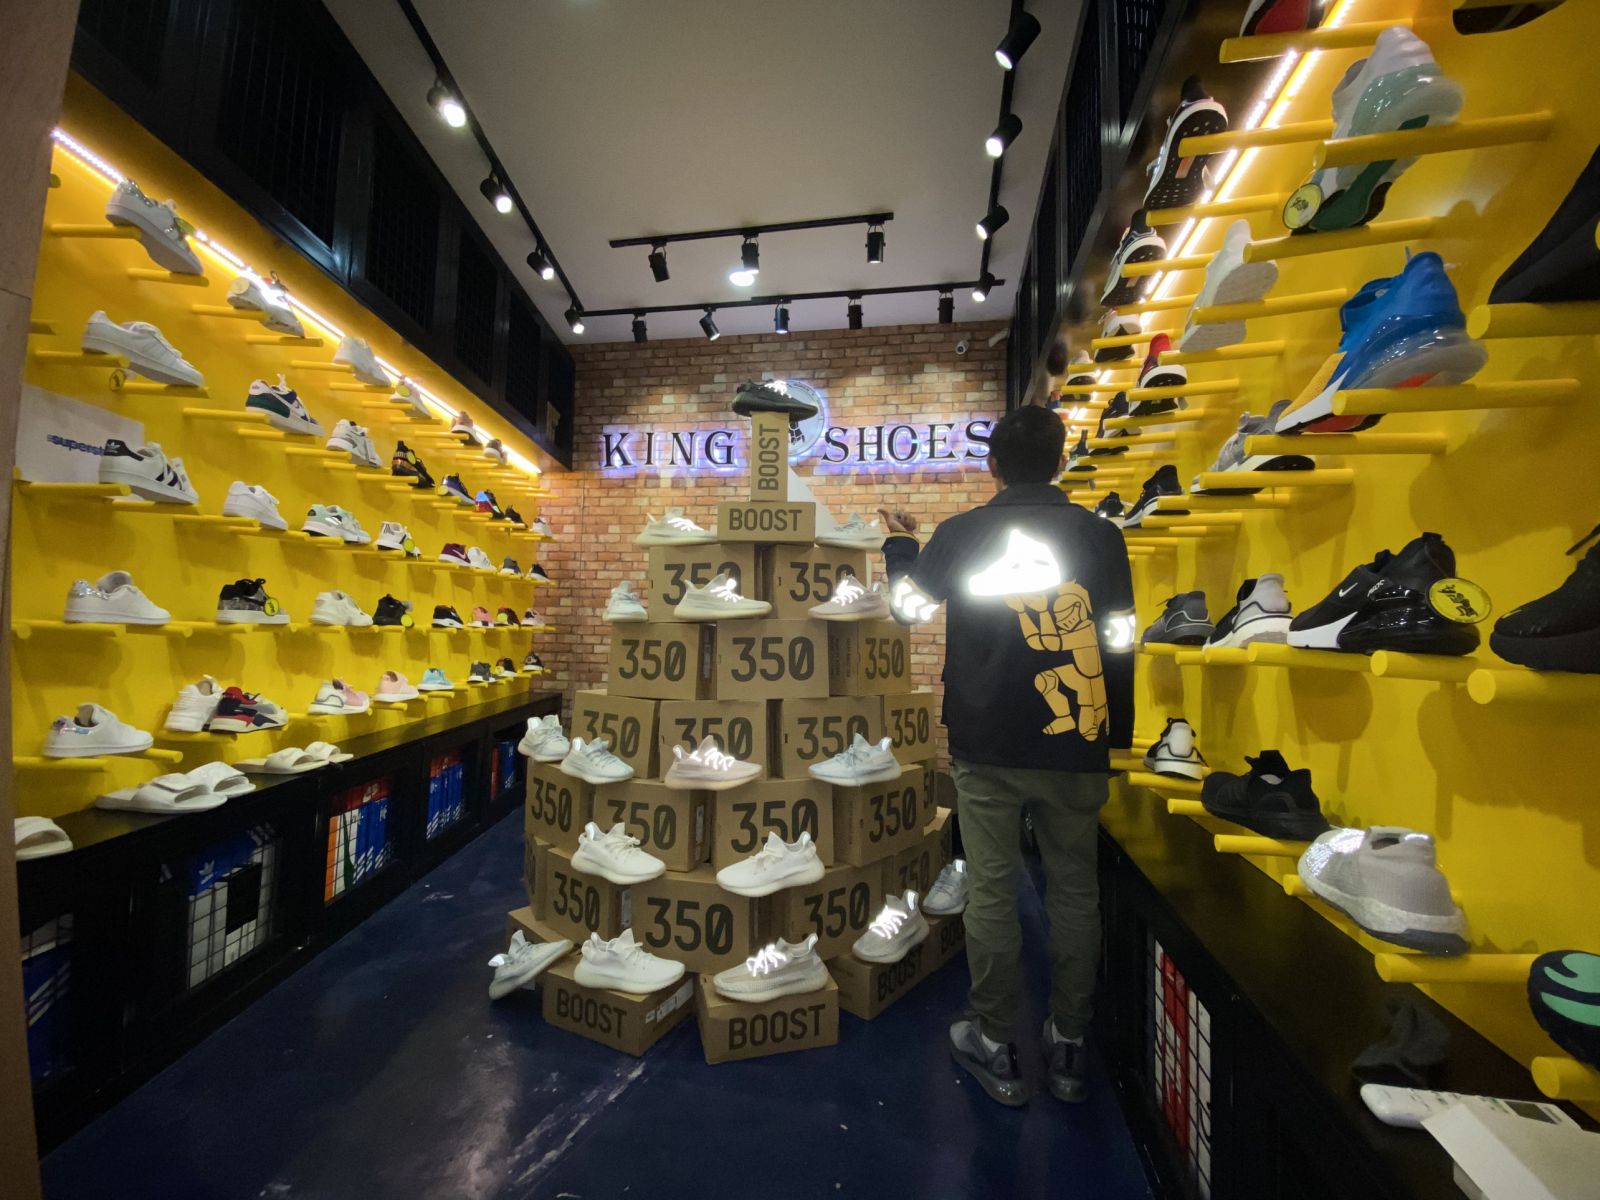 Cửa hàng bán giày sneaker chính hãng tại hcm - king shoes giới thiệu